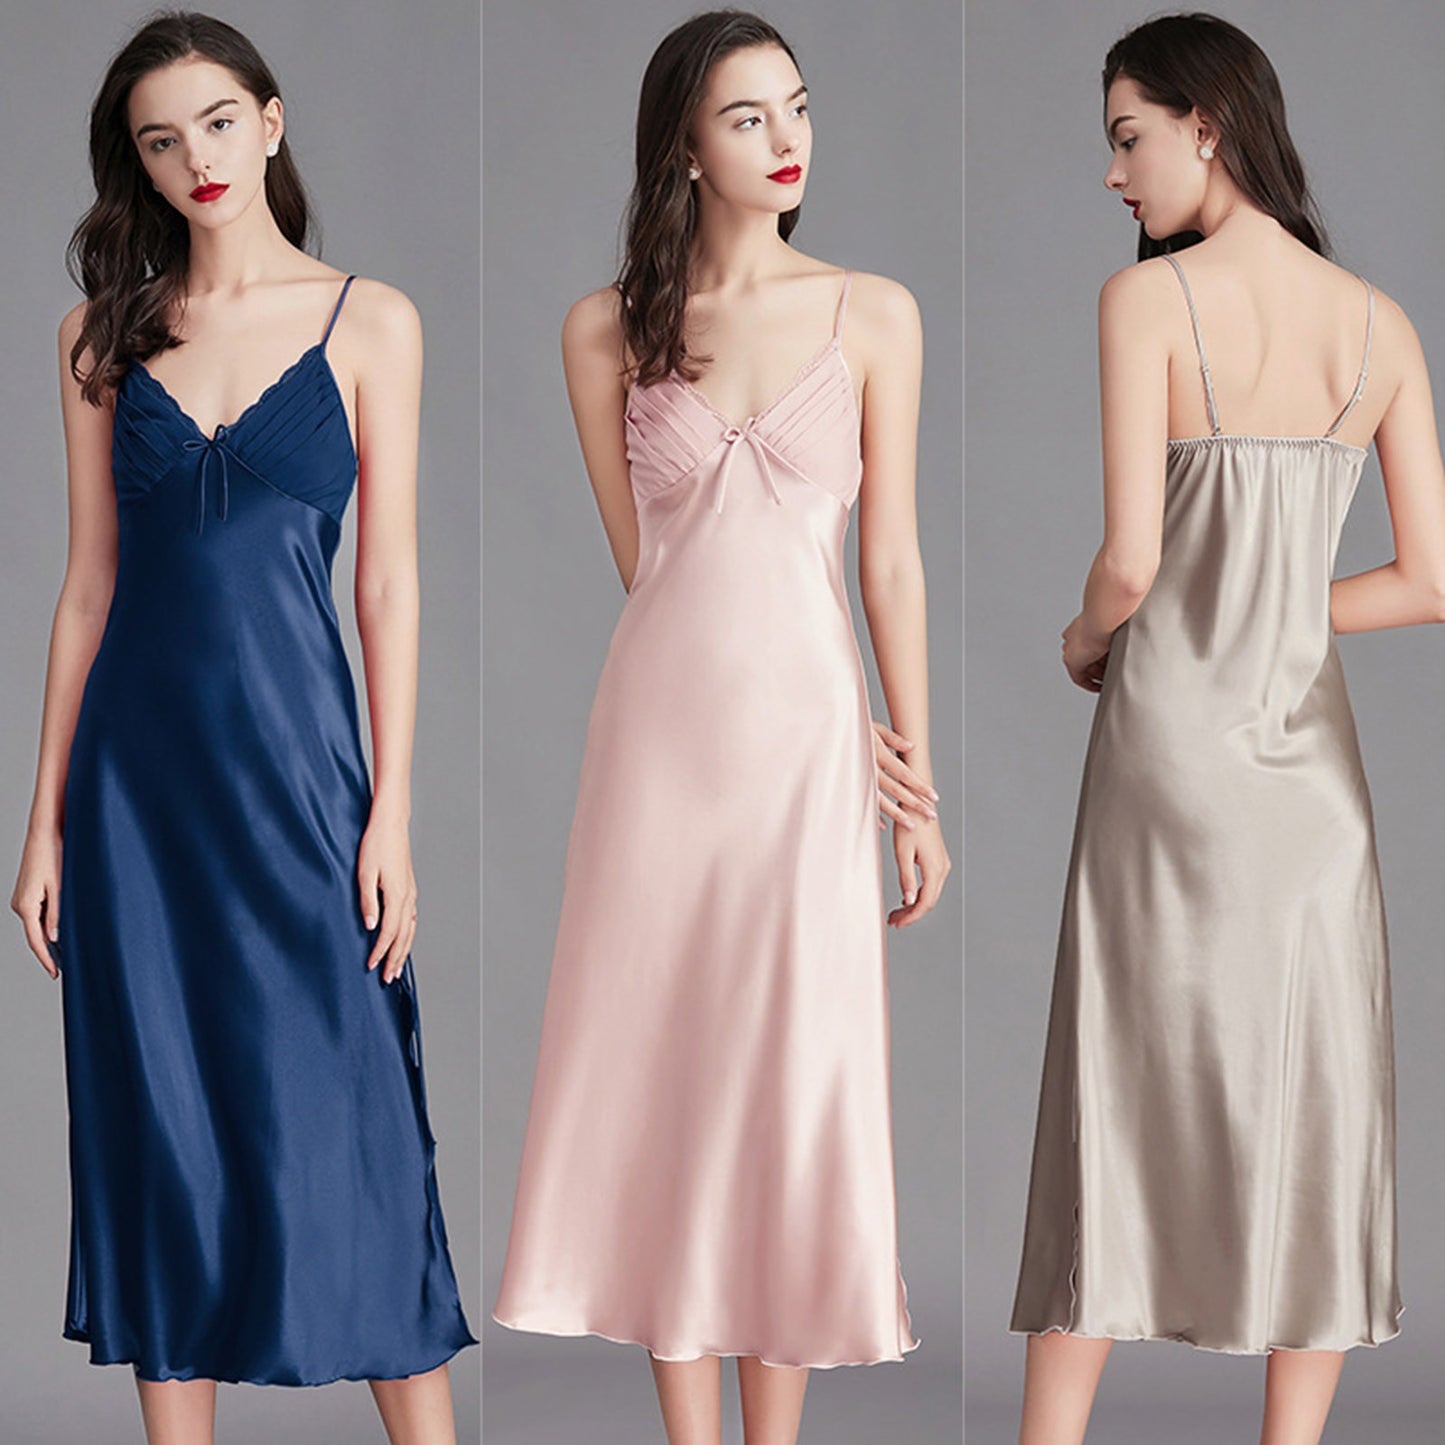 Women Satin Lingerie Long Sleepwear Dress